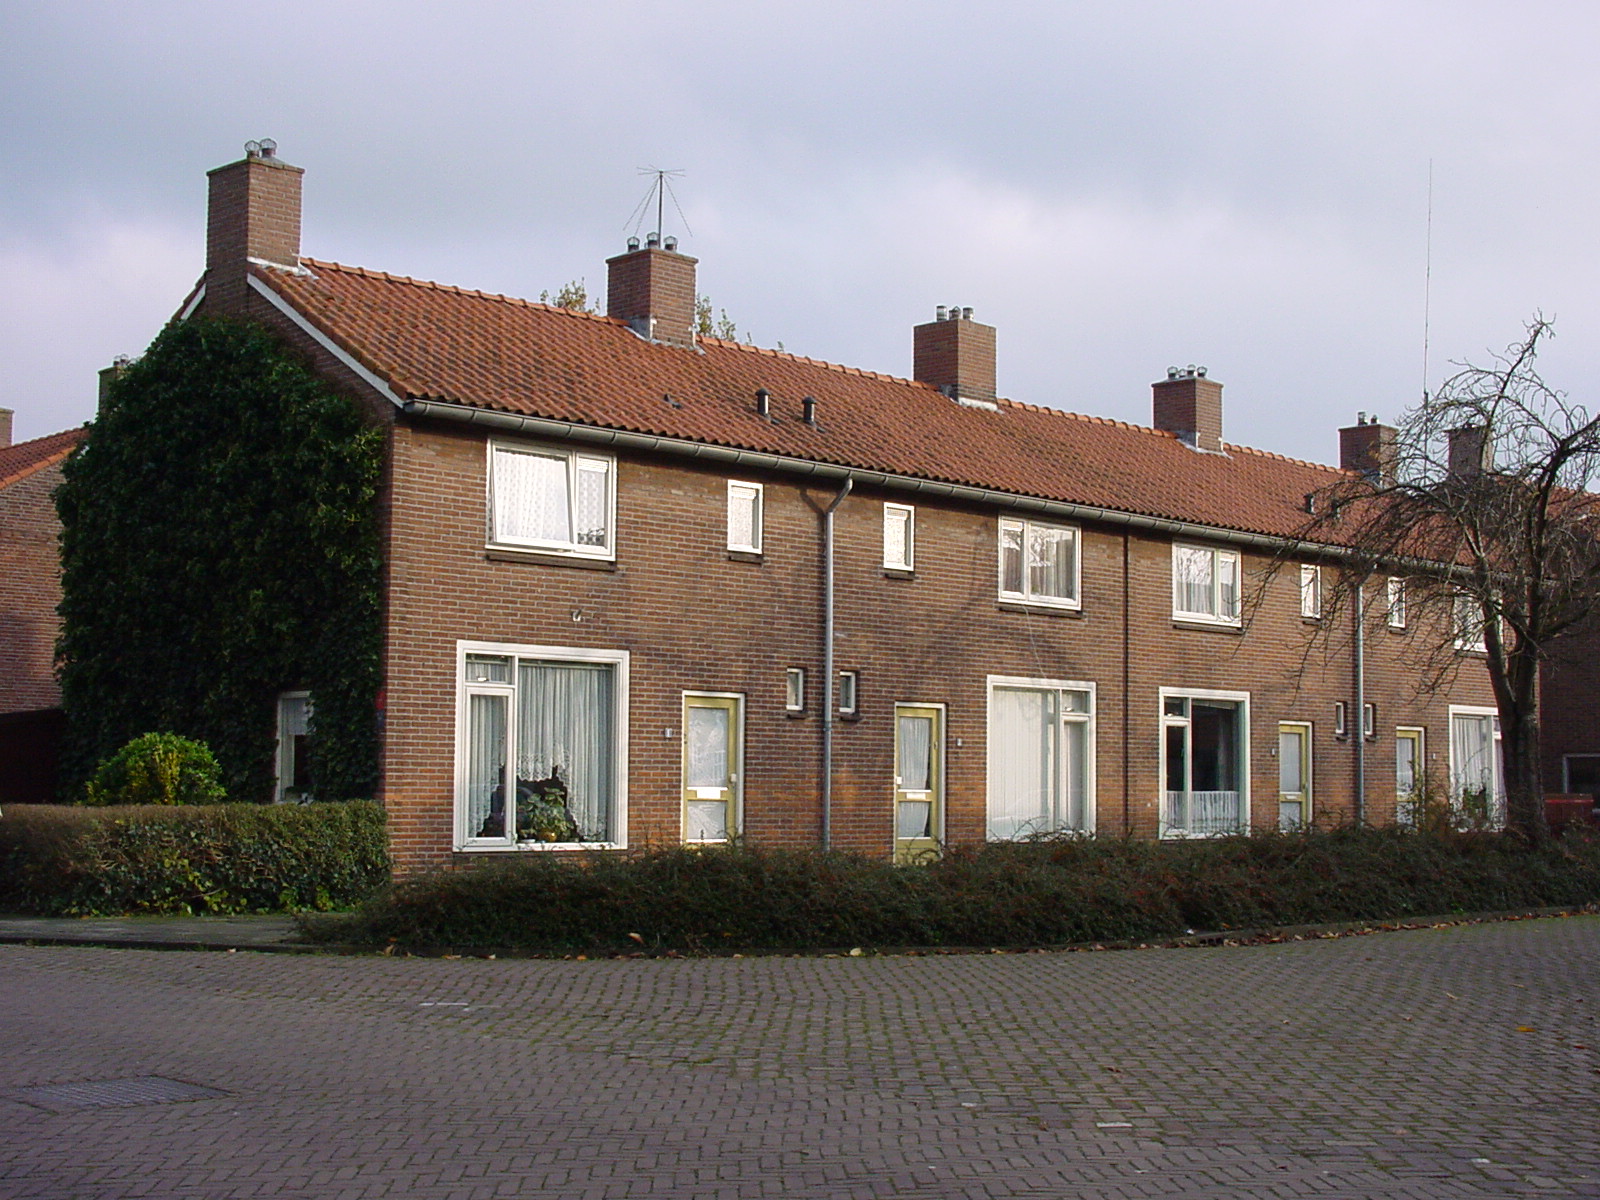 Reinder Eikelboomstraat 7, 7902 HV Hoogeveen, Nederland